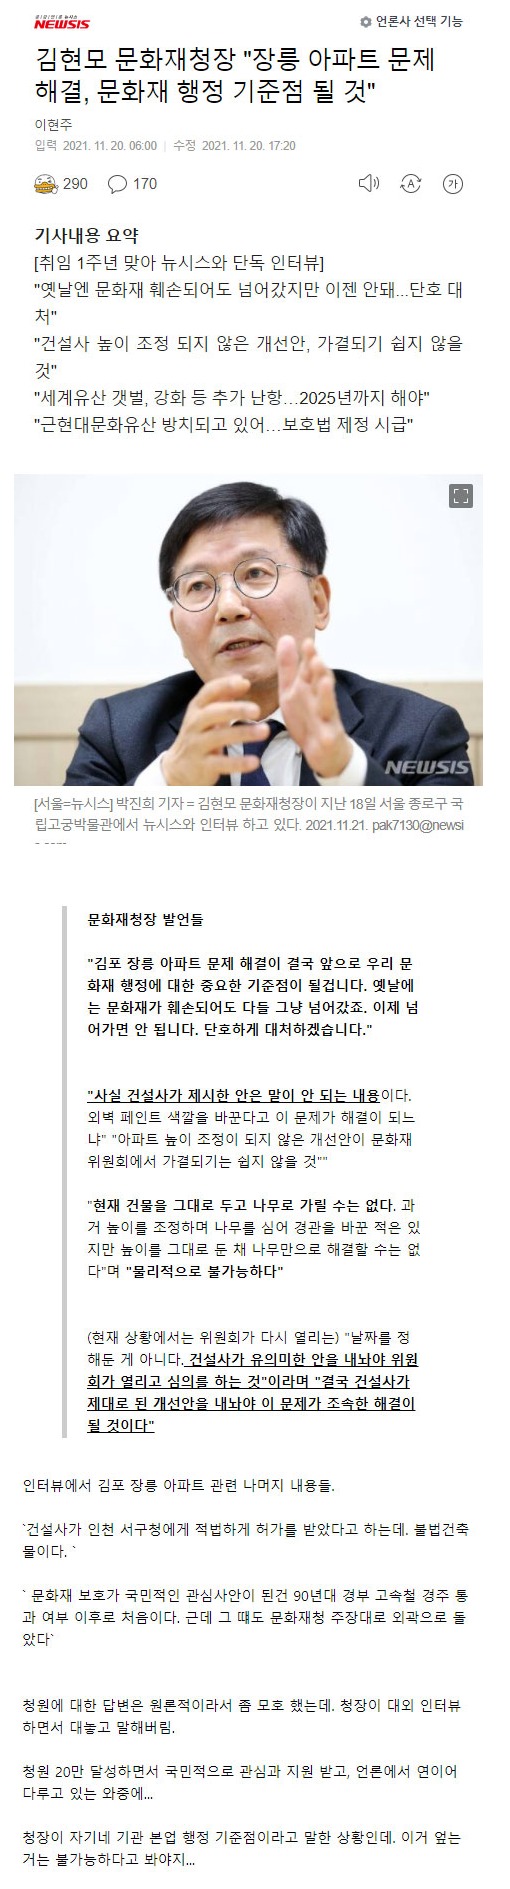 김포 장릉 아파트 문화재청장 공식 인터뷰